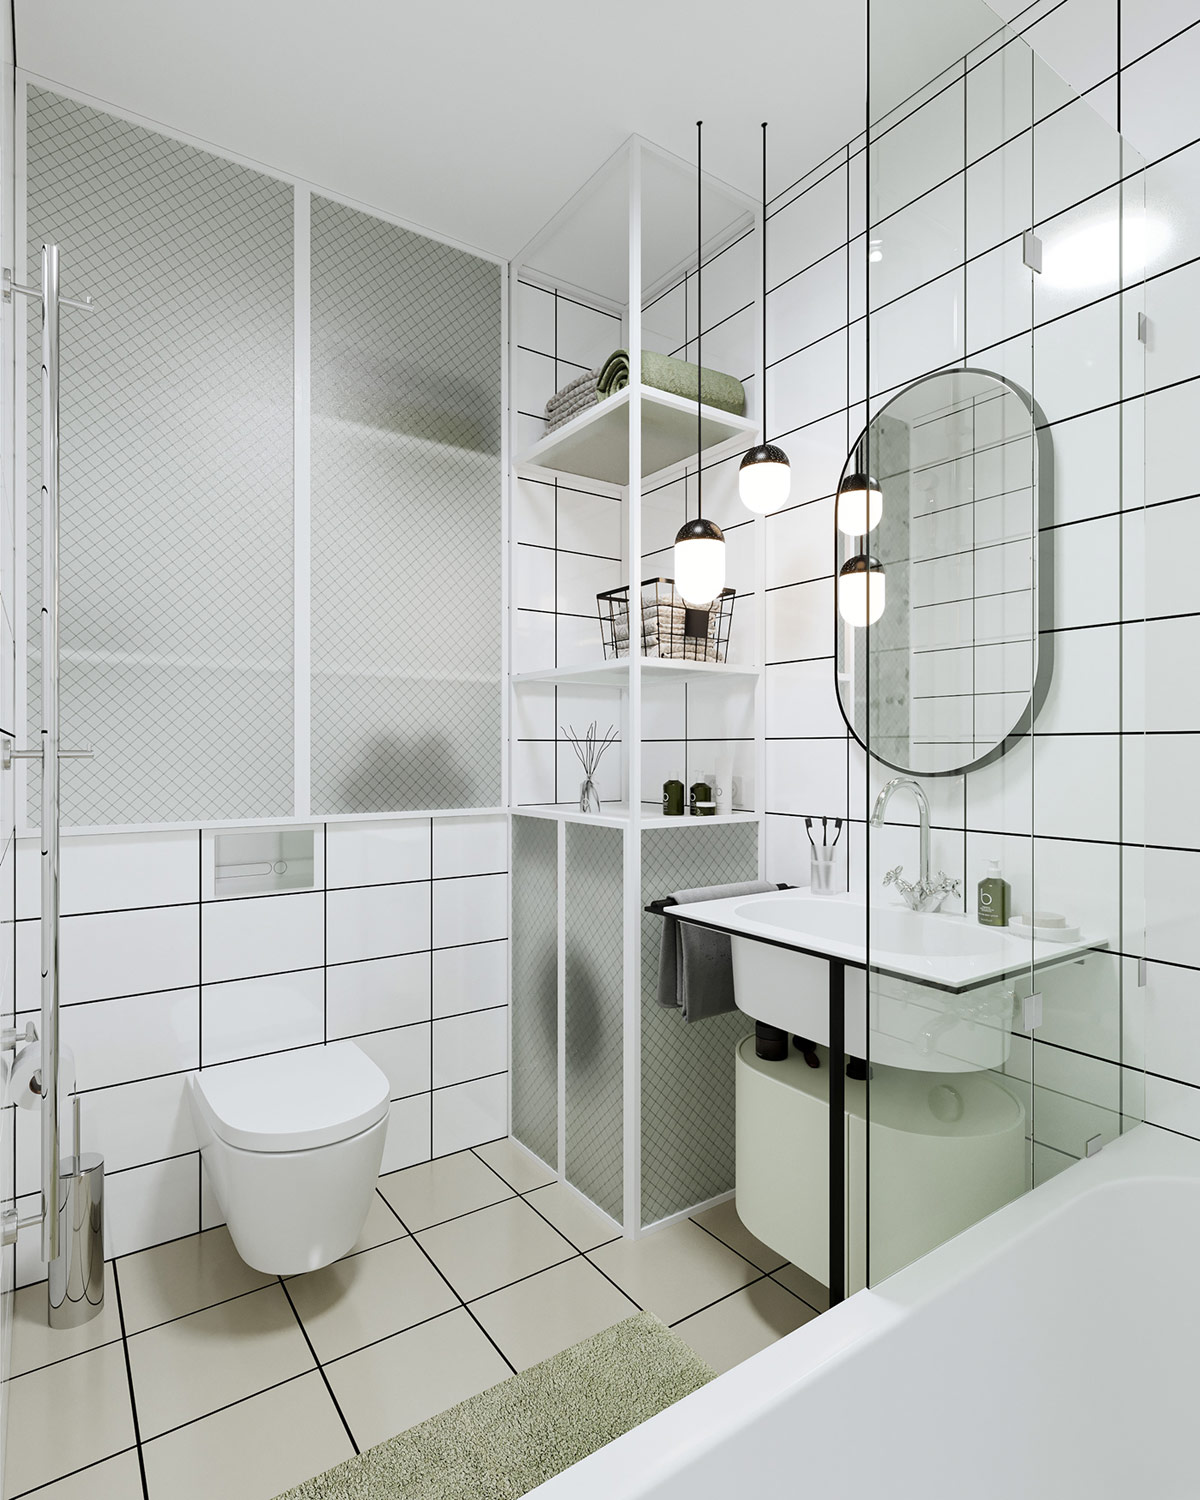 Phòng tắm màu trắng hiện đại, sạch sẽ với đầy đủ các khu vực chức năng gồm bồn tắm, vệ sinh, khu đặt máy giặt sấy.